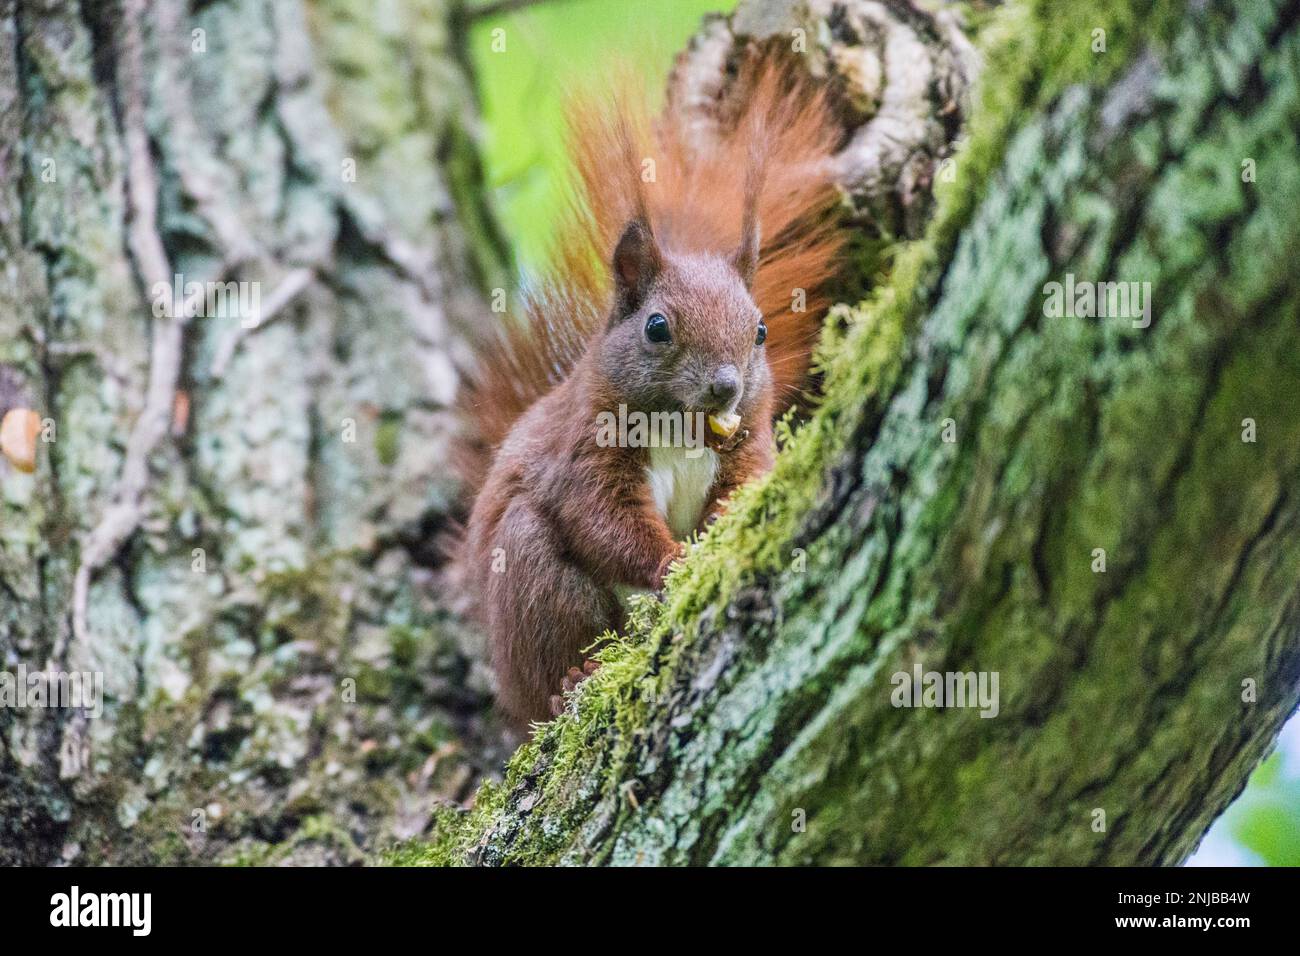 Eurasisches Eichhörnchen auf Ast sitzend und eine Eichel futternd - Eurasian red squirrel sitting on branch and eating an acorn, background blurred Stock Photo